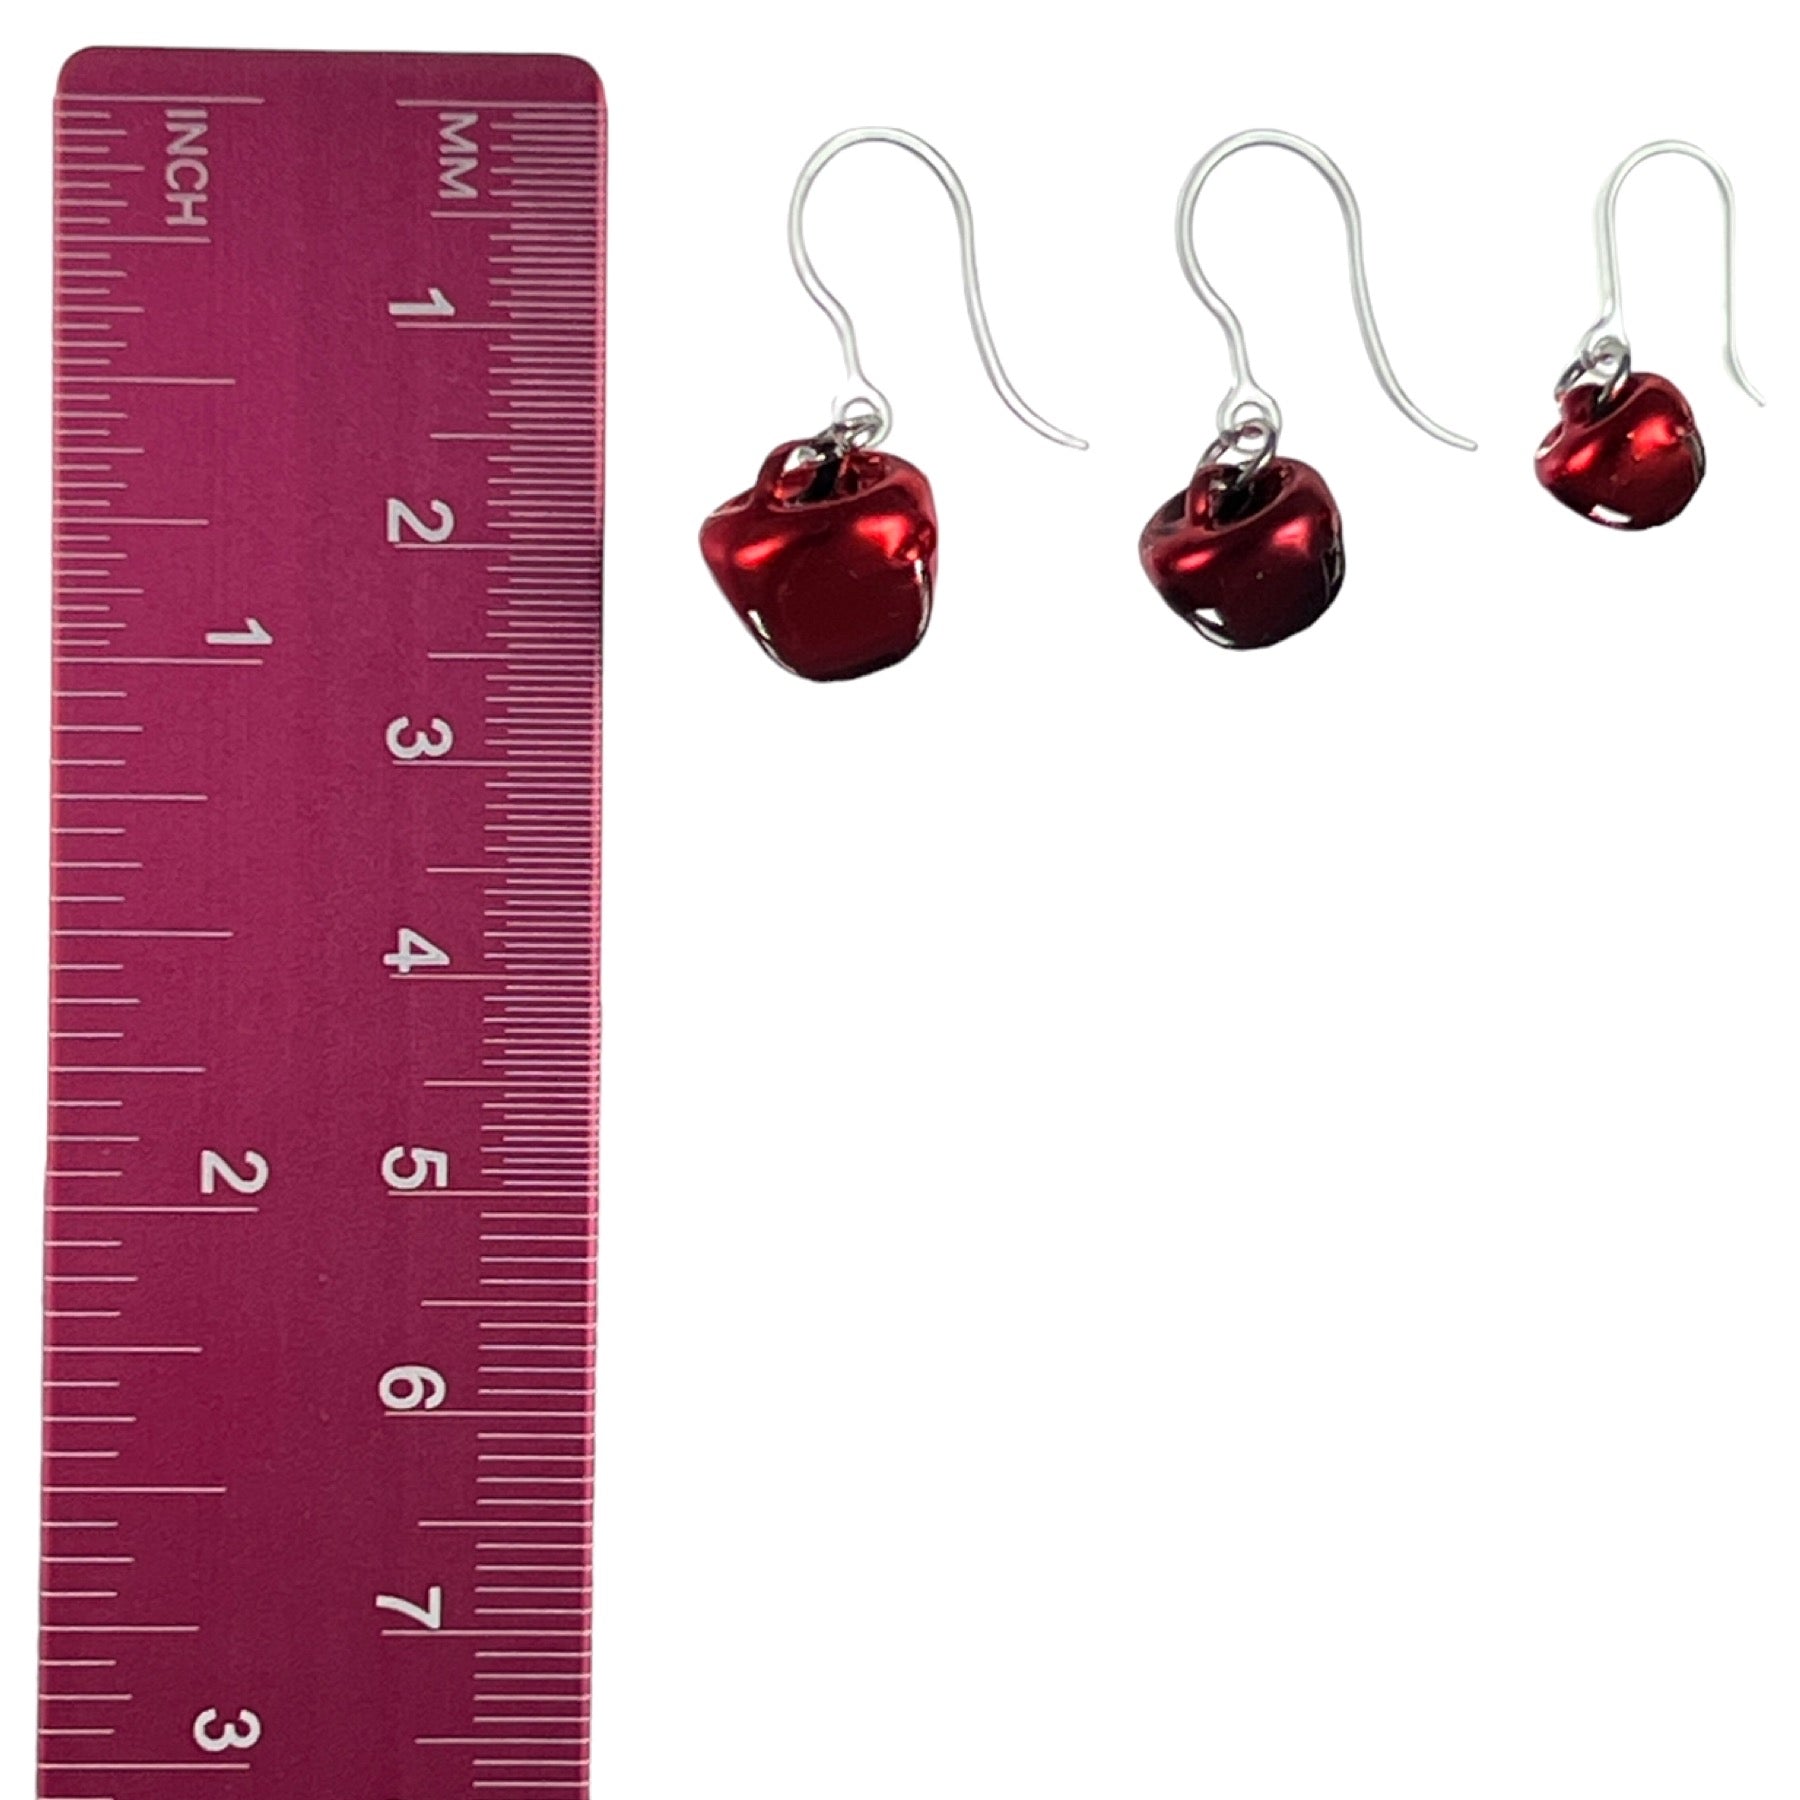 Festive Jingle Bell Earrings - sizes